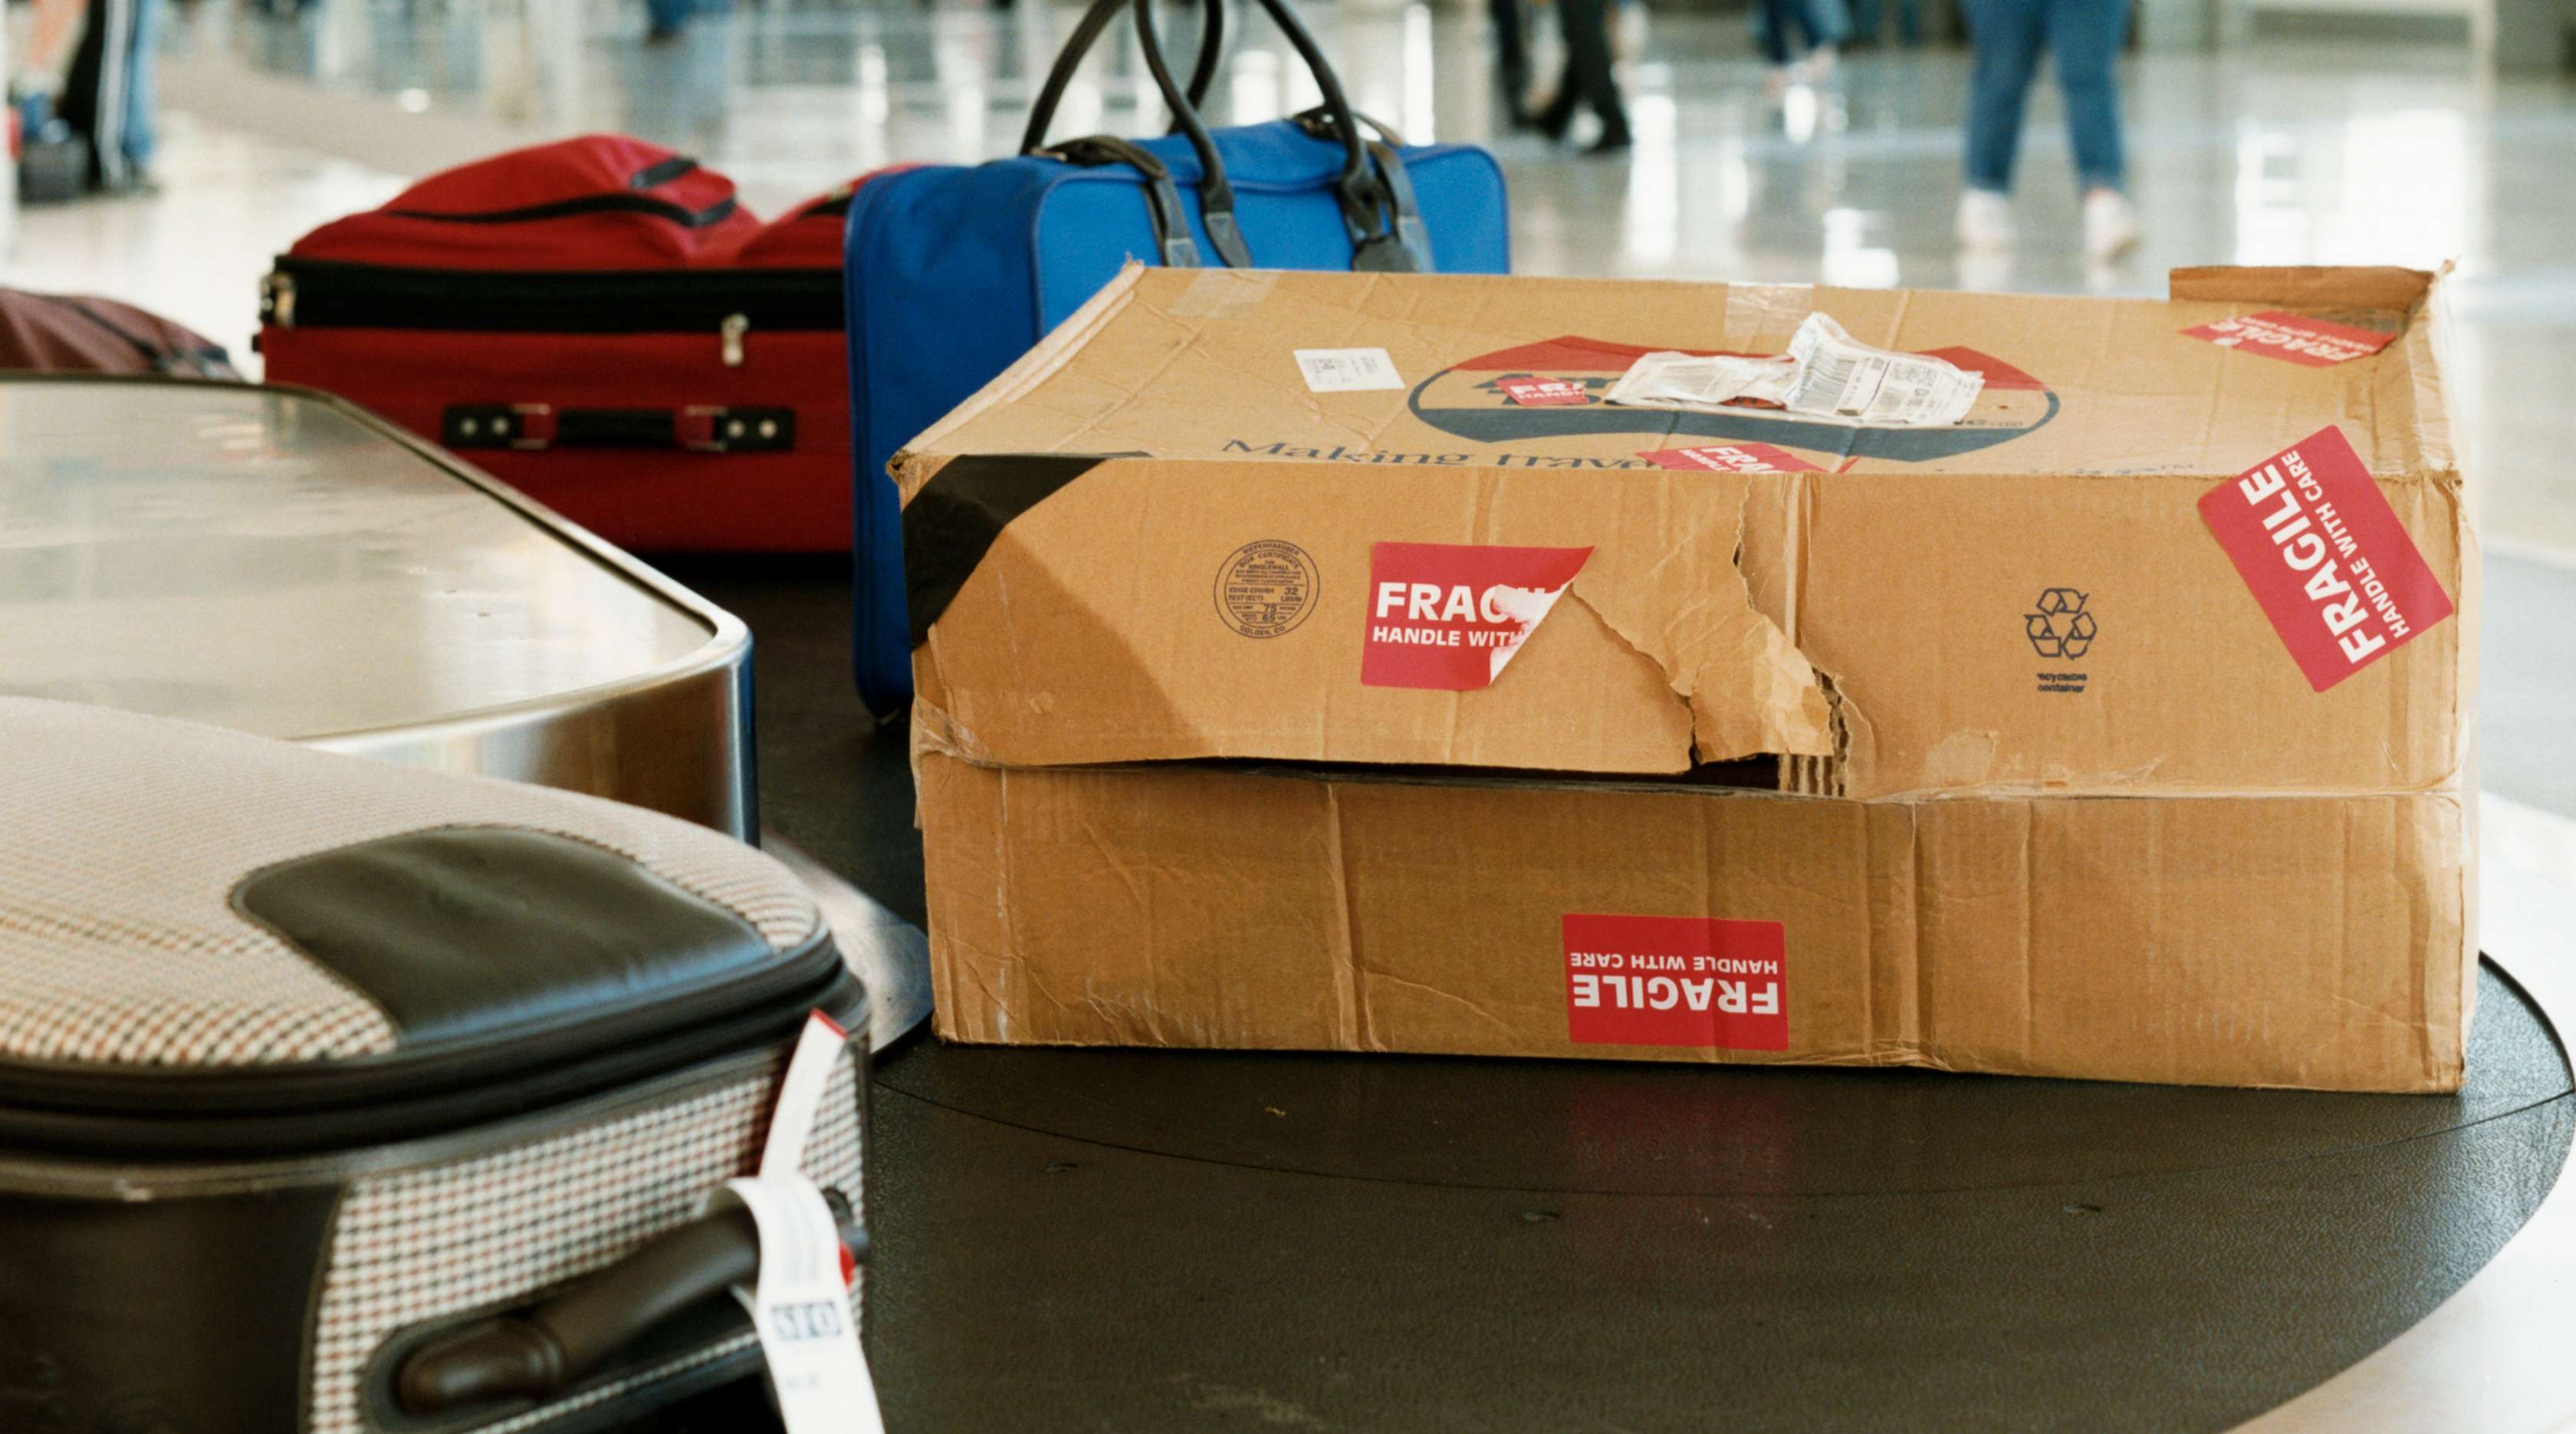 Allianz - Beschädigtes Reisegepäck: Koffer und Pappkarton auf Gepäckförderband